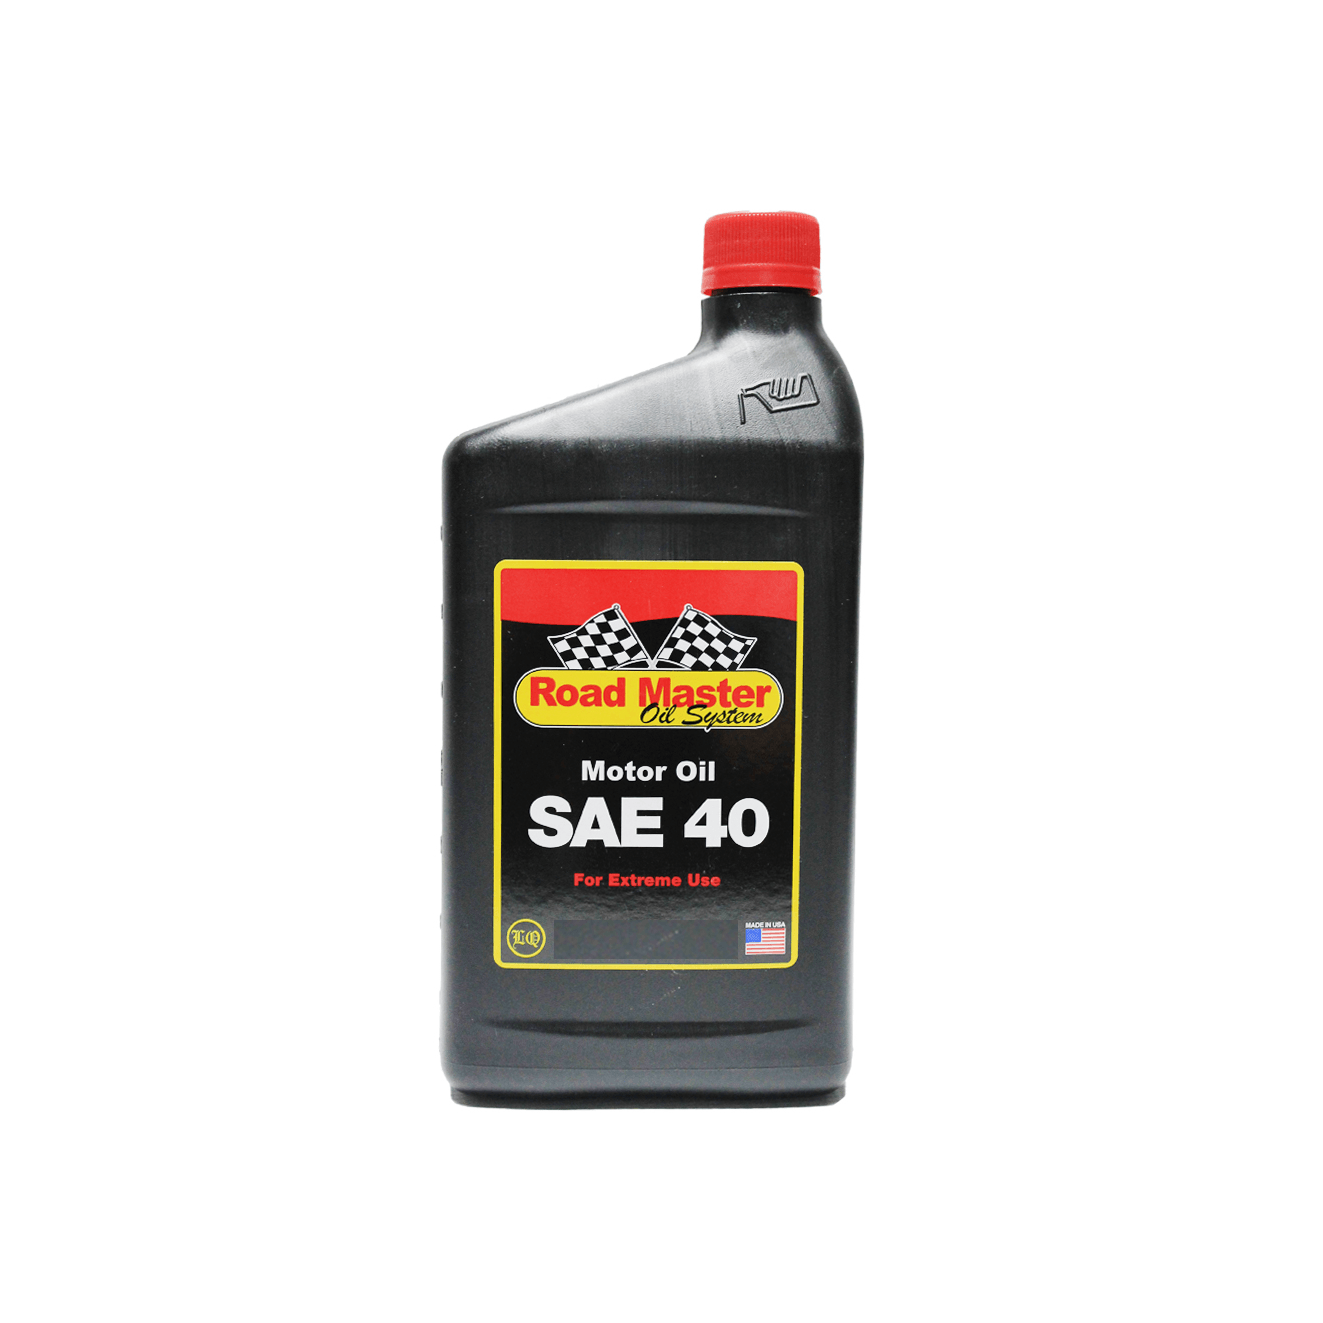 SAE 40 aceite de motor Road Master - Luquisa